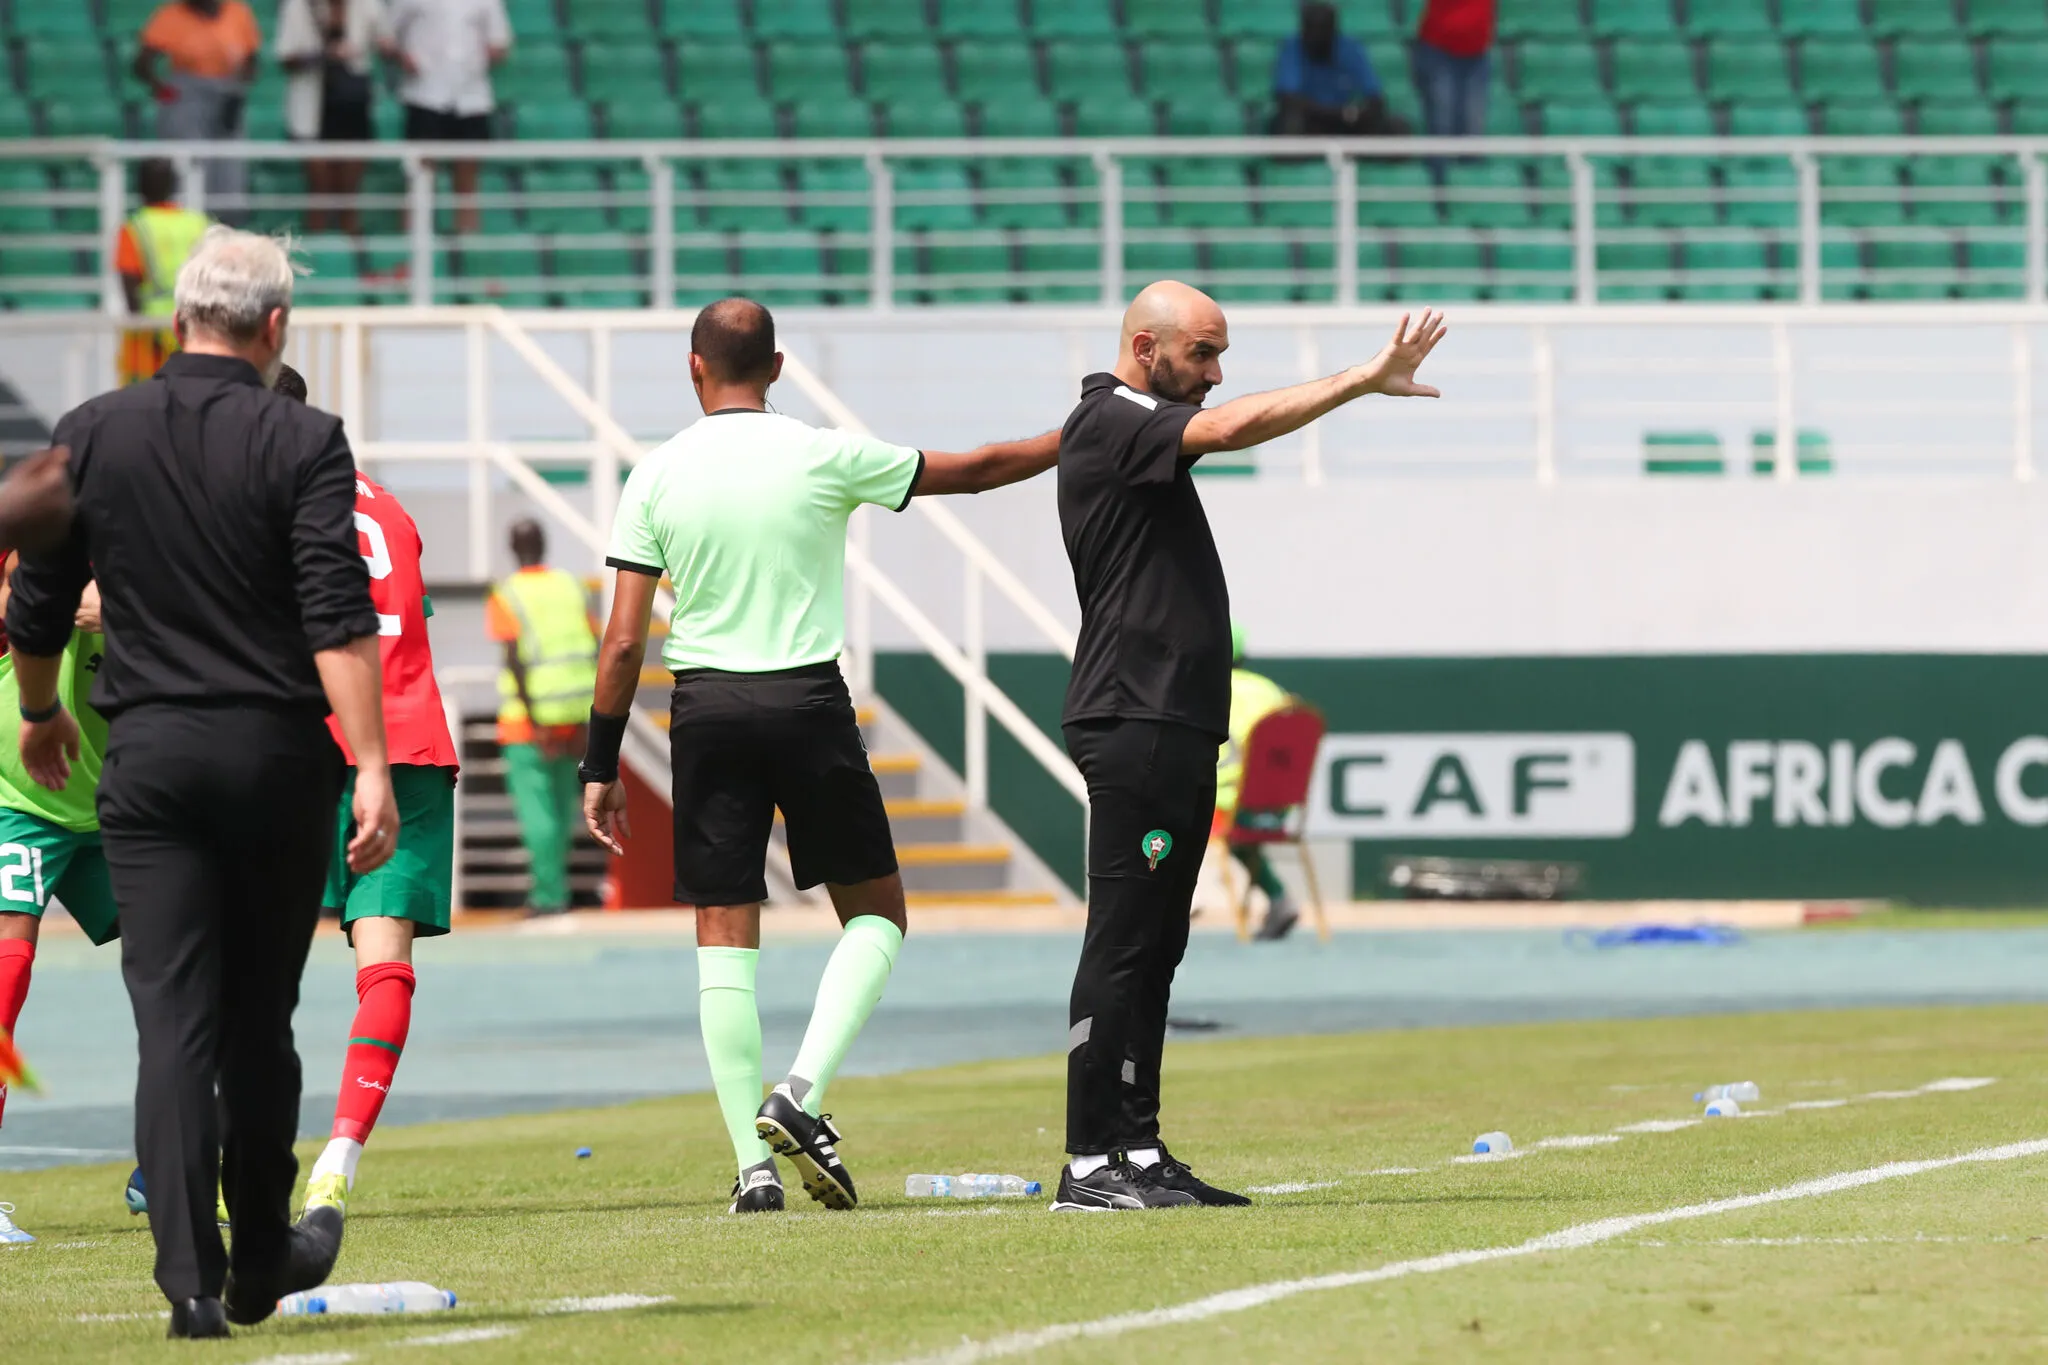 La fédération marocaine tente de calmer le jeu après la bagarre d’après-match contre la RDC